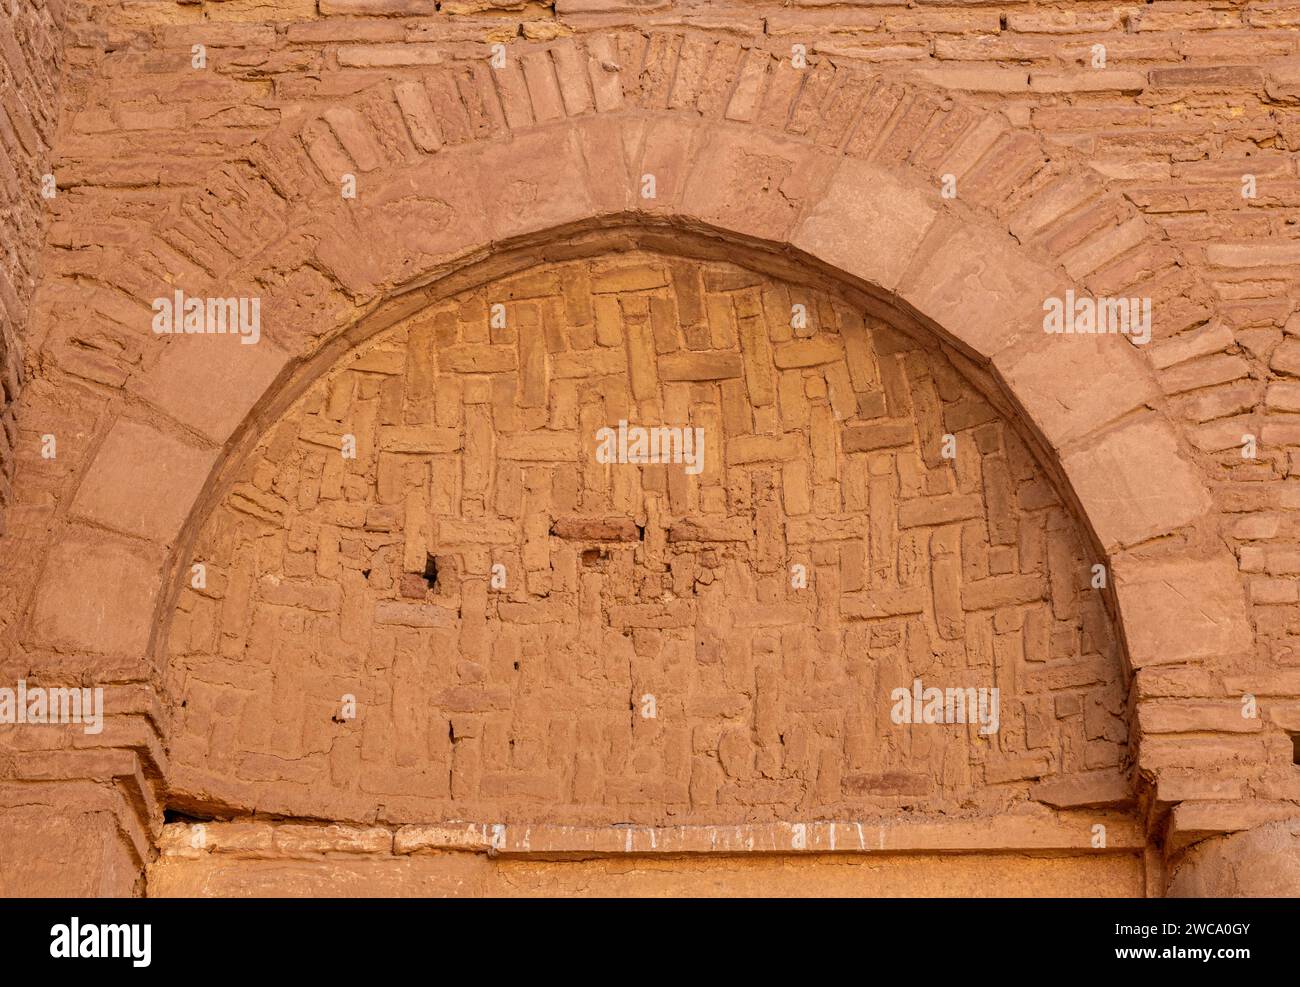 Détail de la décoration en briques entrelacées (hazarbaf), cour principale, forteresse d'al-Ukhaidir ou palais abbasside d'Ukhaider, Irak Banque D'Images